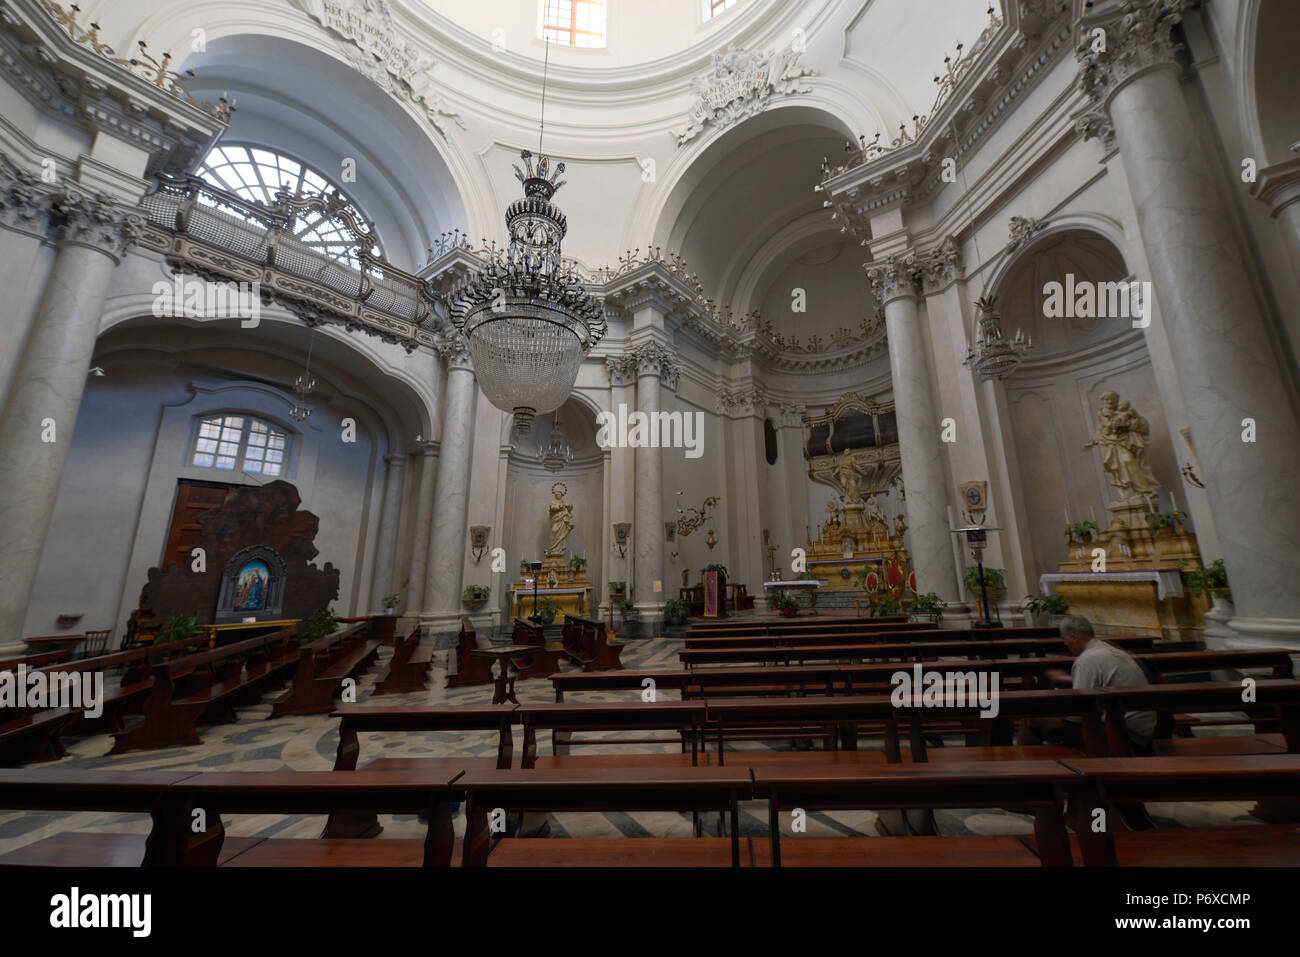 Innenraum, Chiesa della Badia di Sant'Agata, Via Vittorio Emanuele II, Catania, sicilia, Italie Banque D'Images